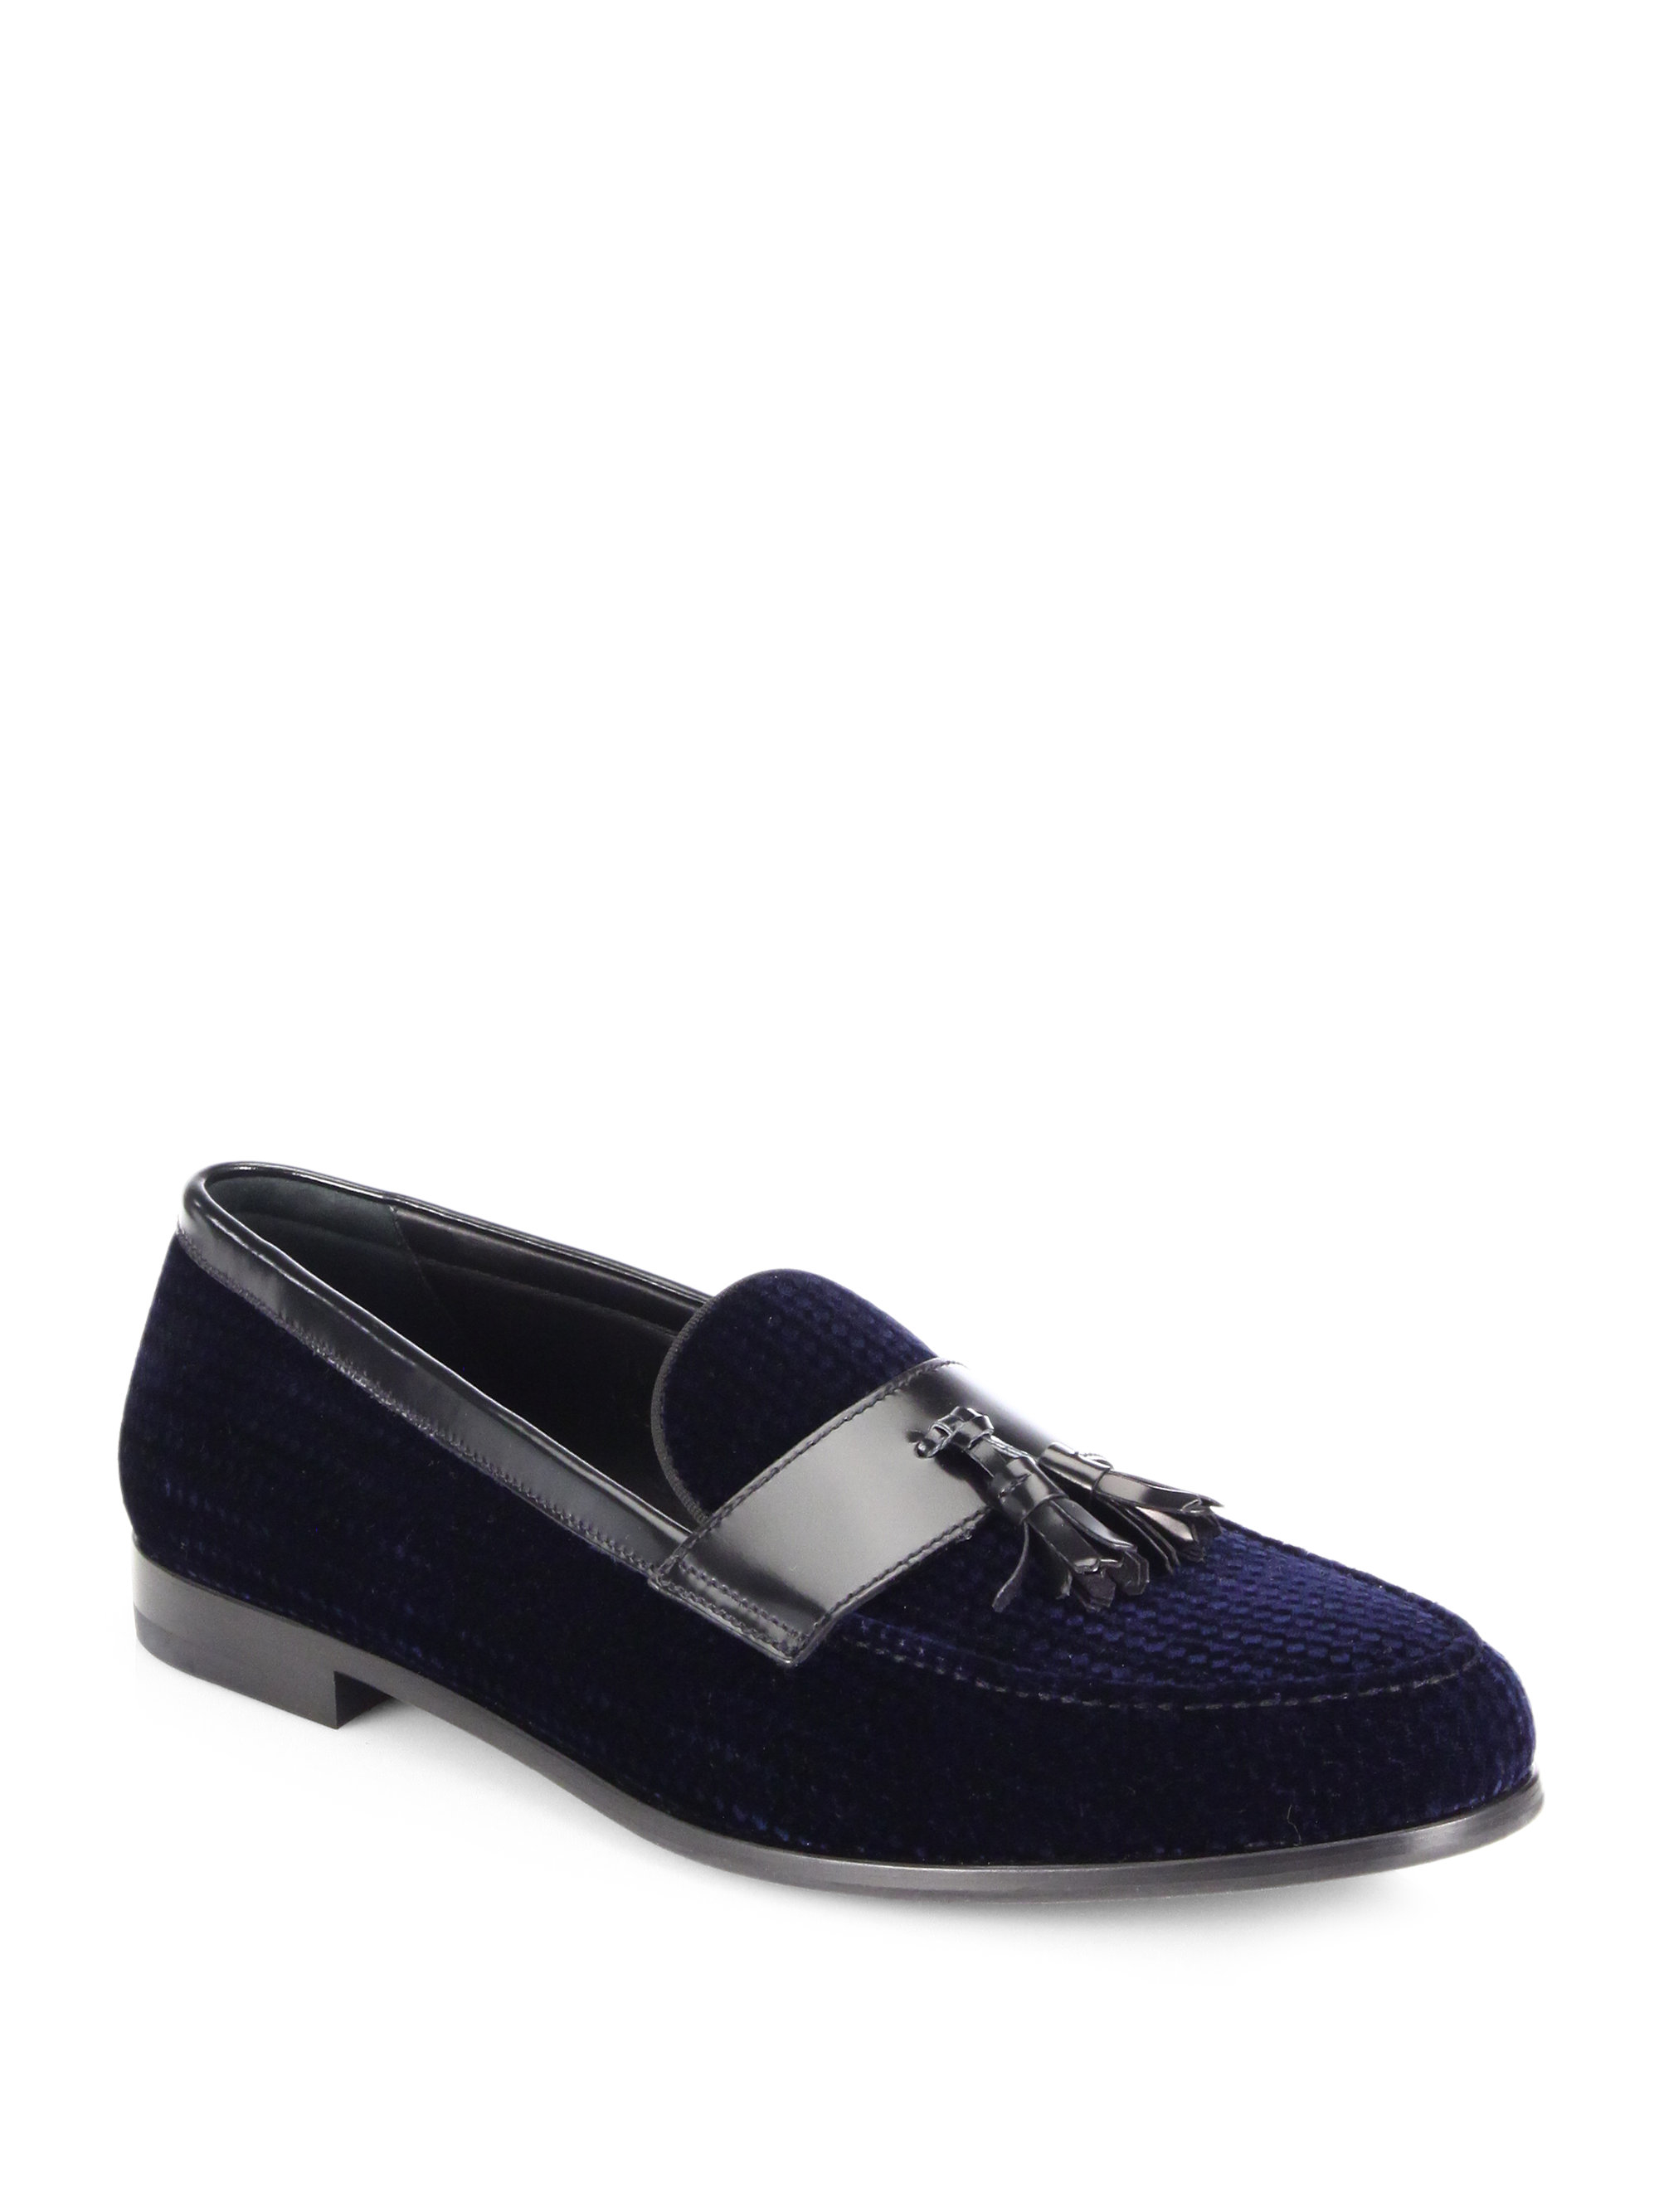 Lyst - Giorgio Armani Textured Velvet Tasseled Loafers in Blue for Men